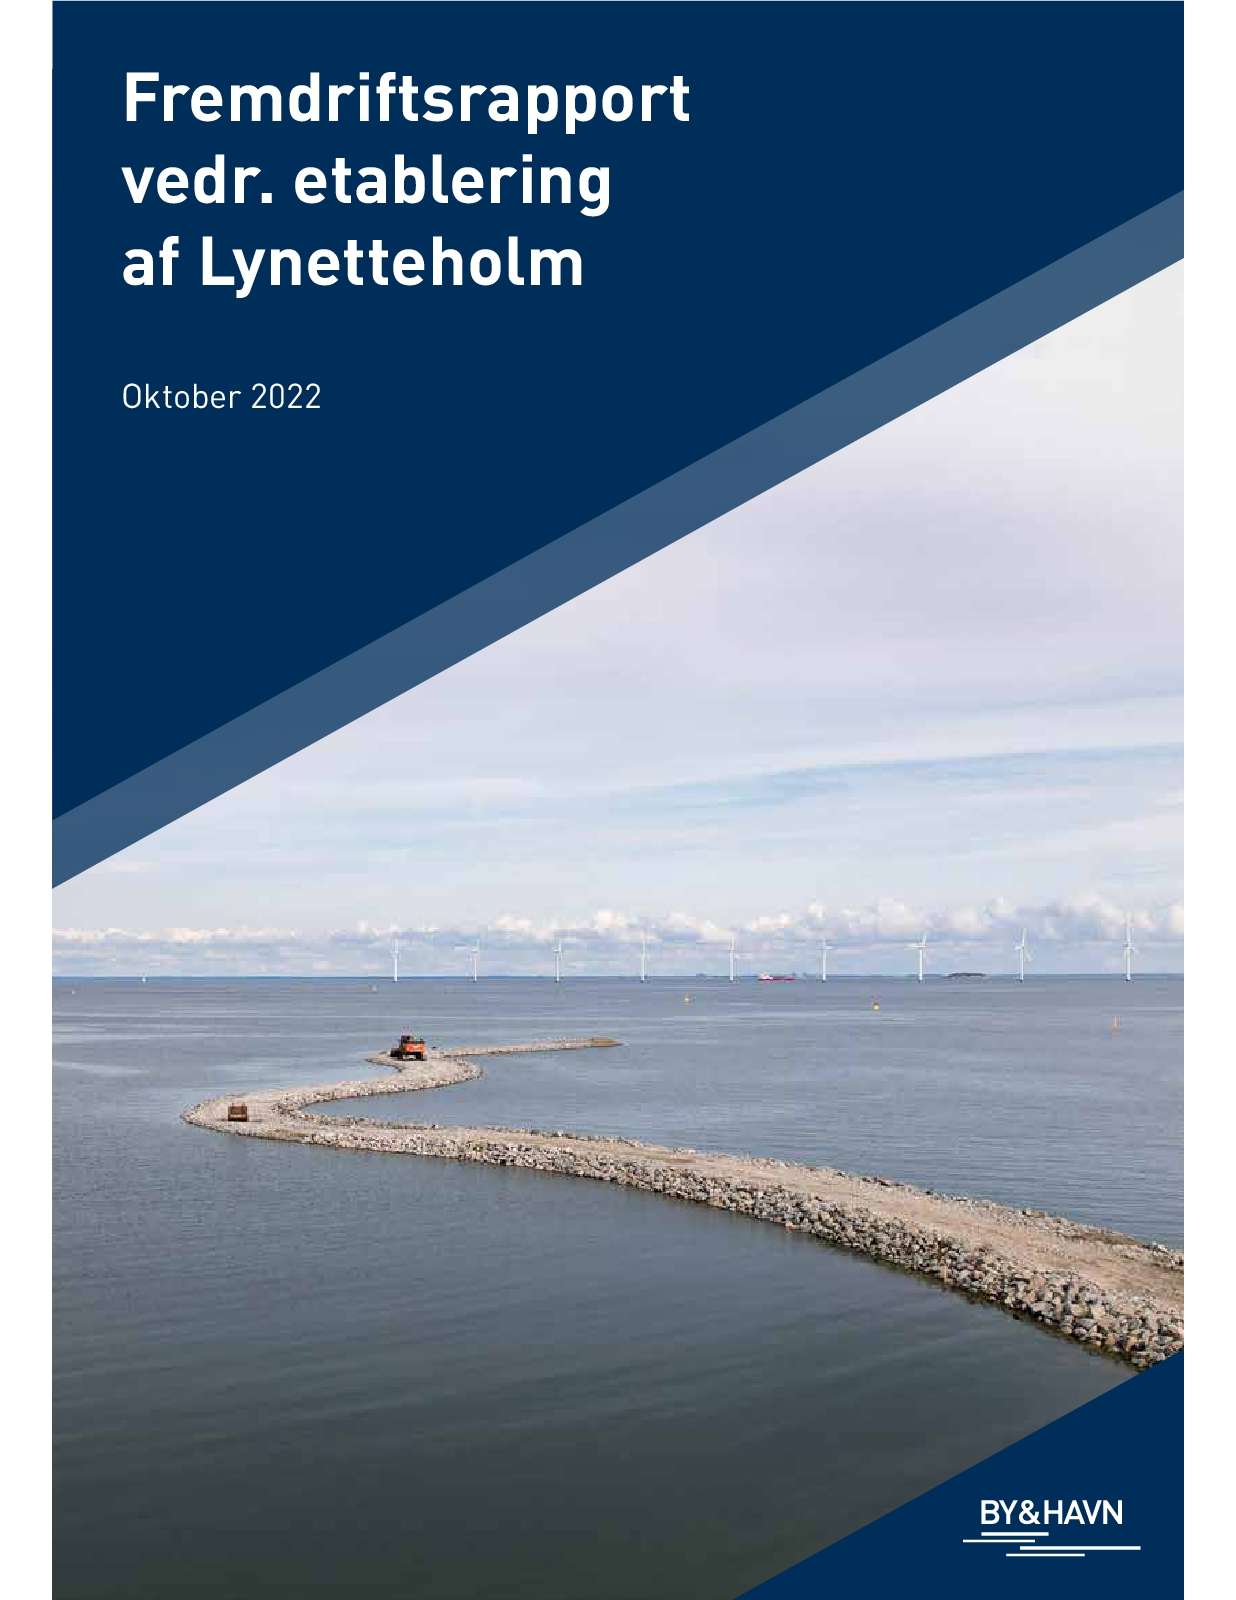 Fremdriftsrapport vedr. etablering af Lynetteholm